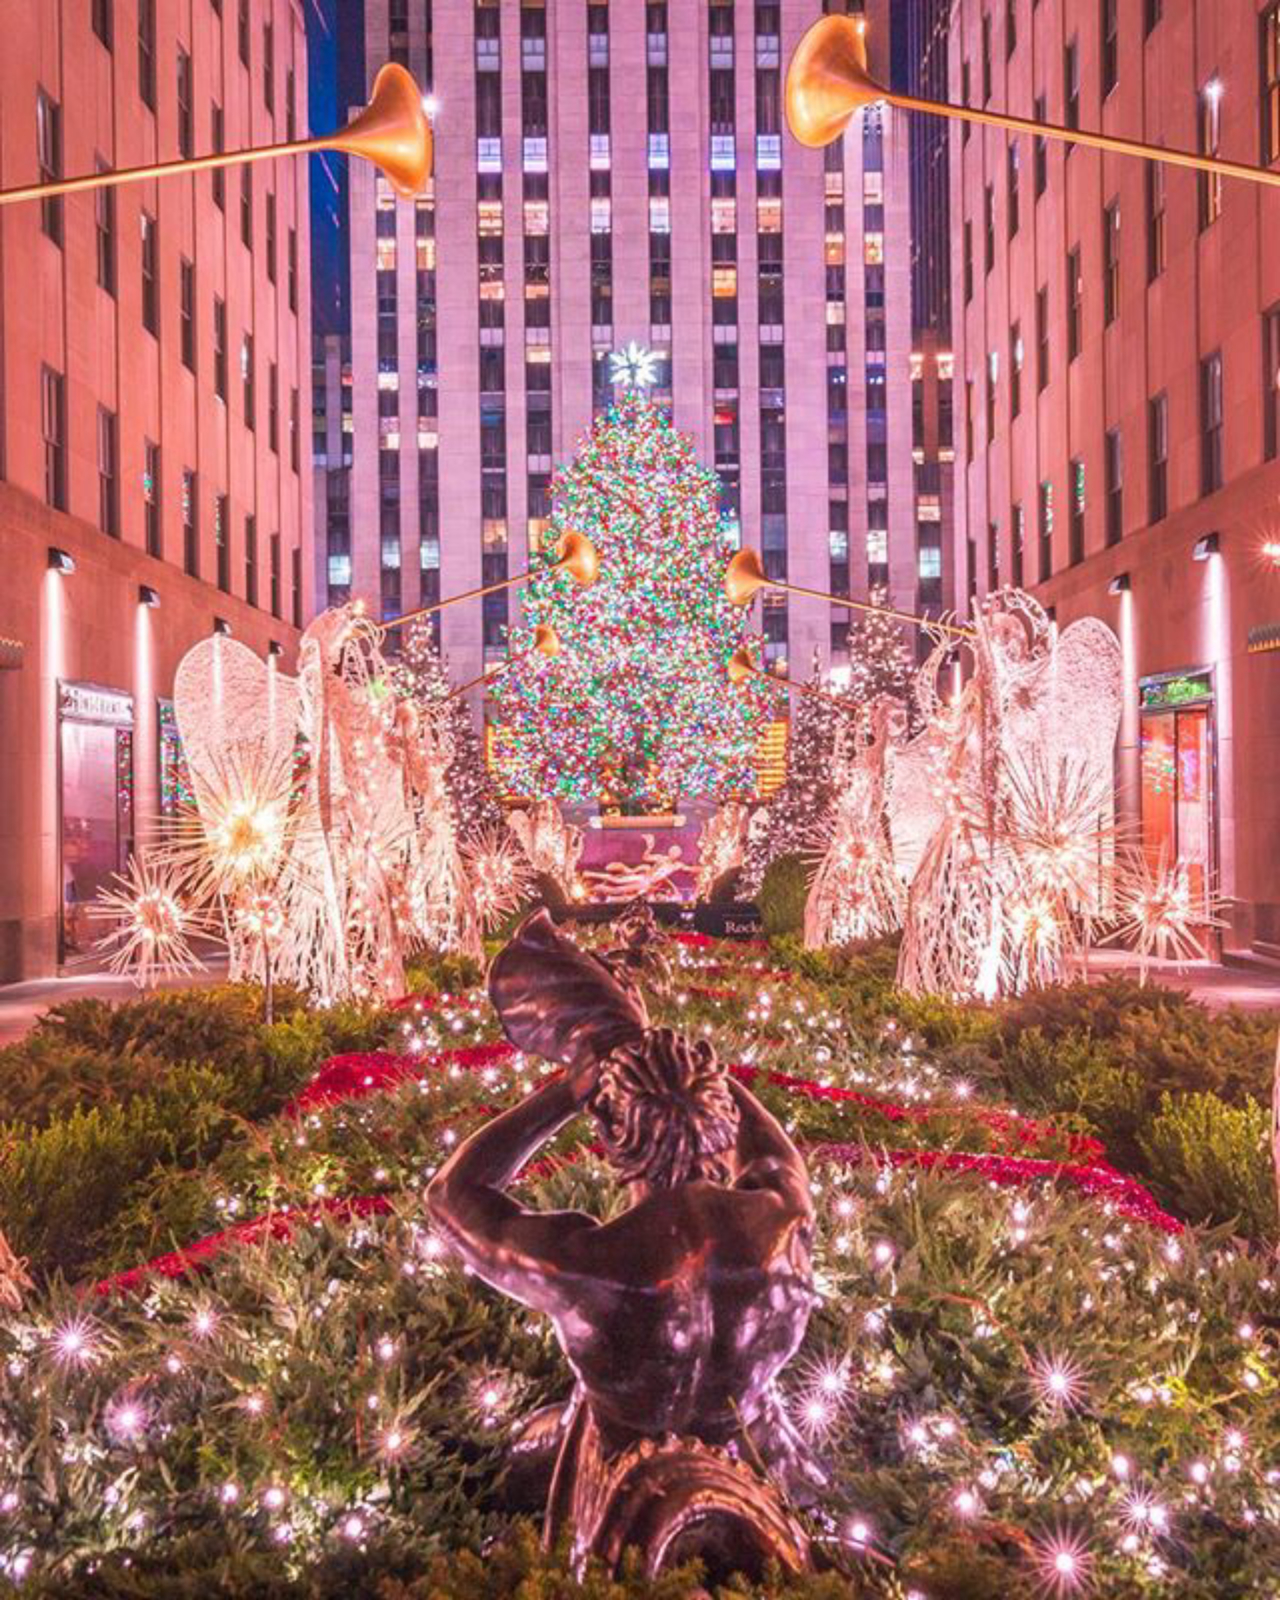 As luzes da árvore do Rockefeller Center foram acesas no dia 29 de novembro. Foto: Reprodução/ Instagram @212sid